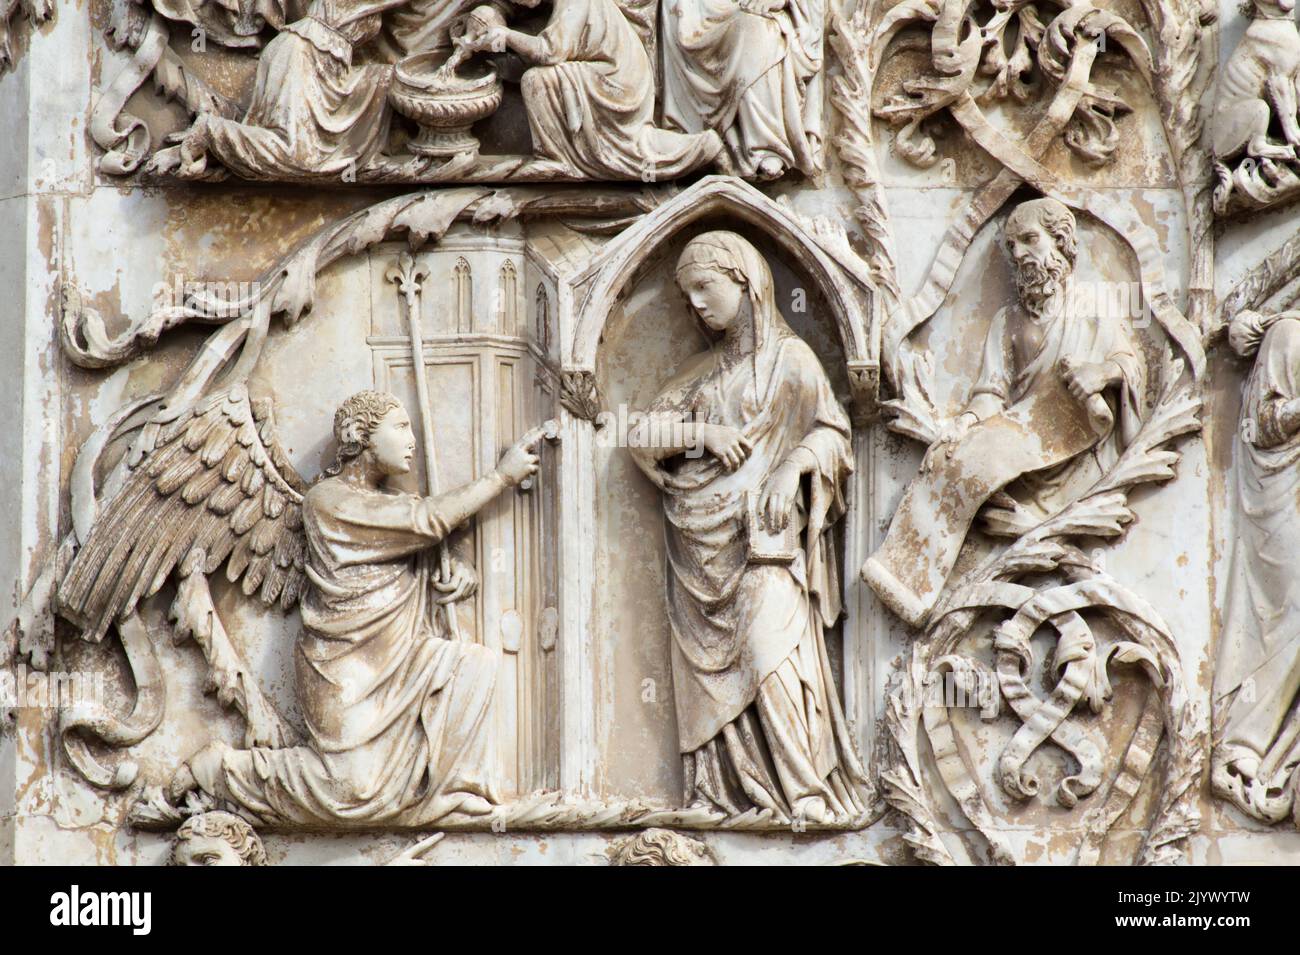 Die Verkündigung: Der Engel Gabriel erscheint der seligen Jungfrau Maria - Bas-Relief aus der 3. Säule - Fassade der Kathedrale von Orvieto - Umbrien Stockfoto